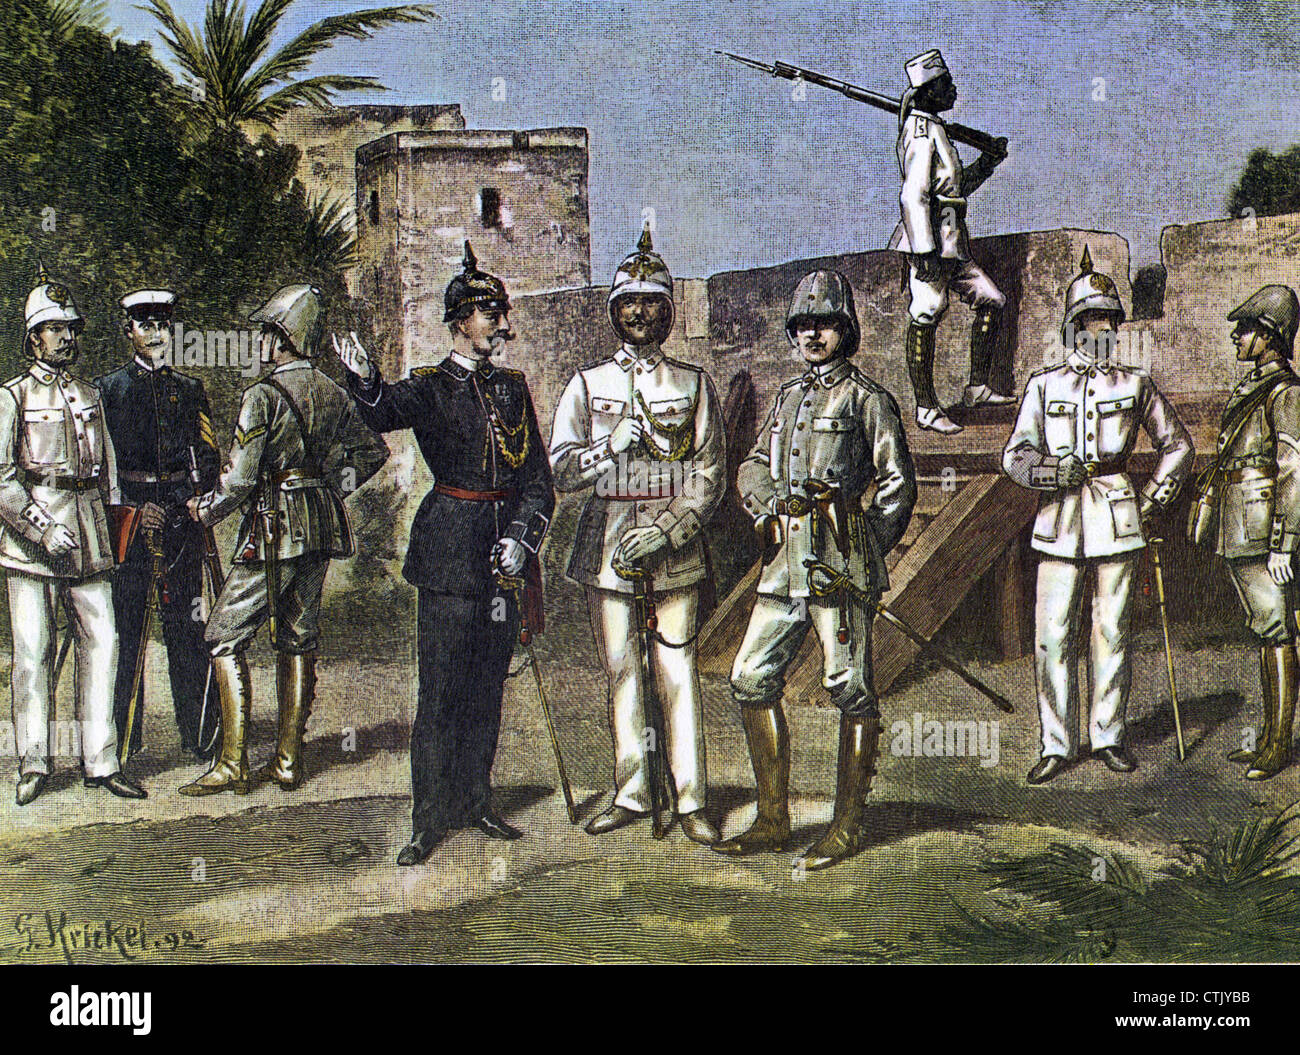 Deutsche KOLONIAL Offiziere IN Afrika im Jahre 1892, wie in der französischen Zeitschrift Le Petit Illustre gezeigt Stockfoto